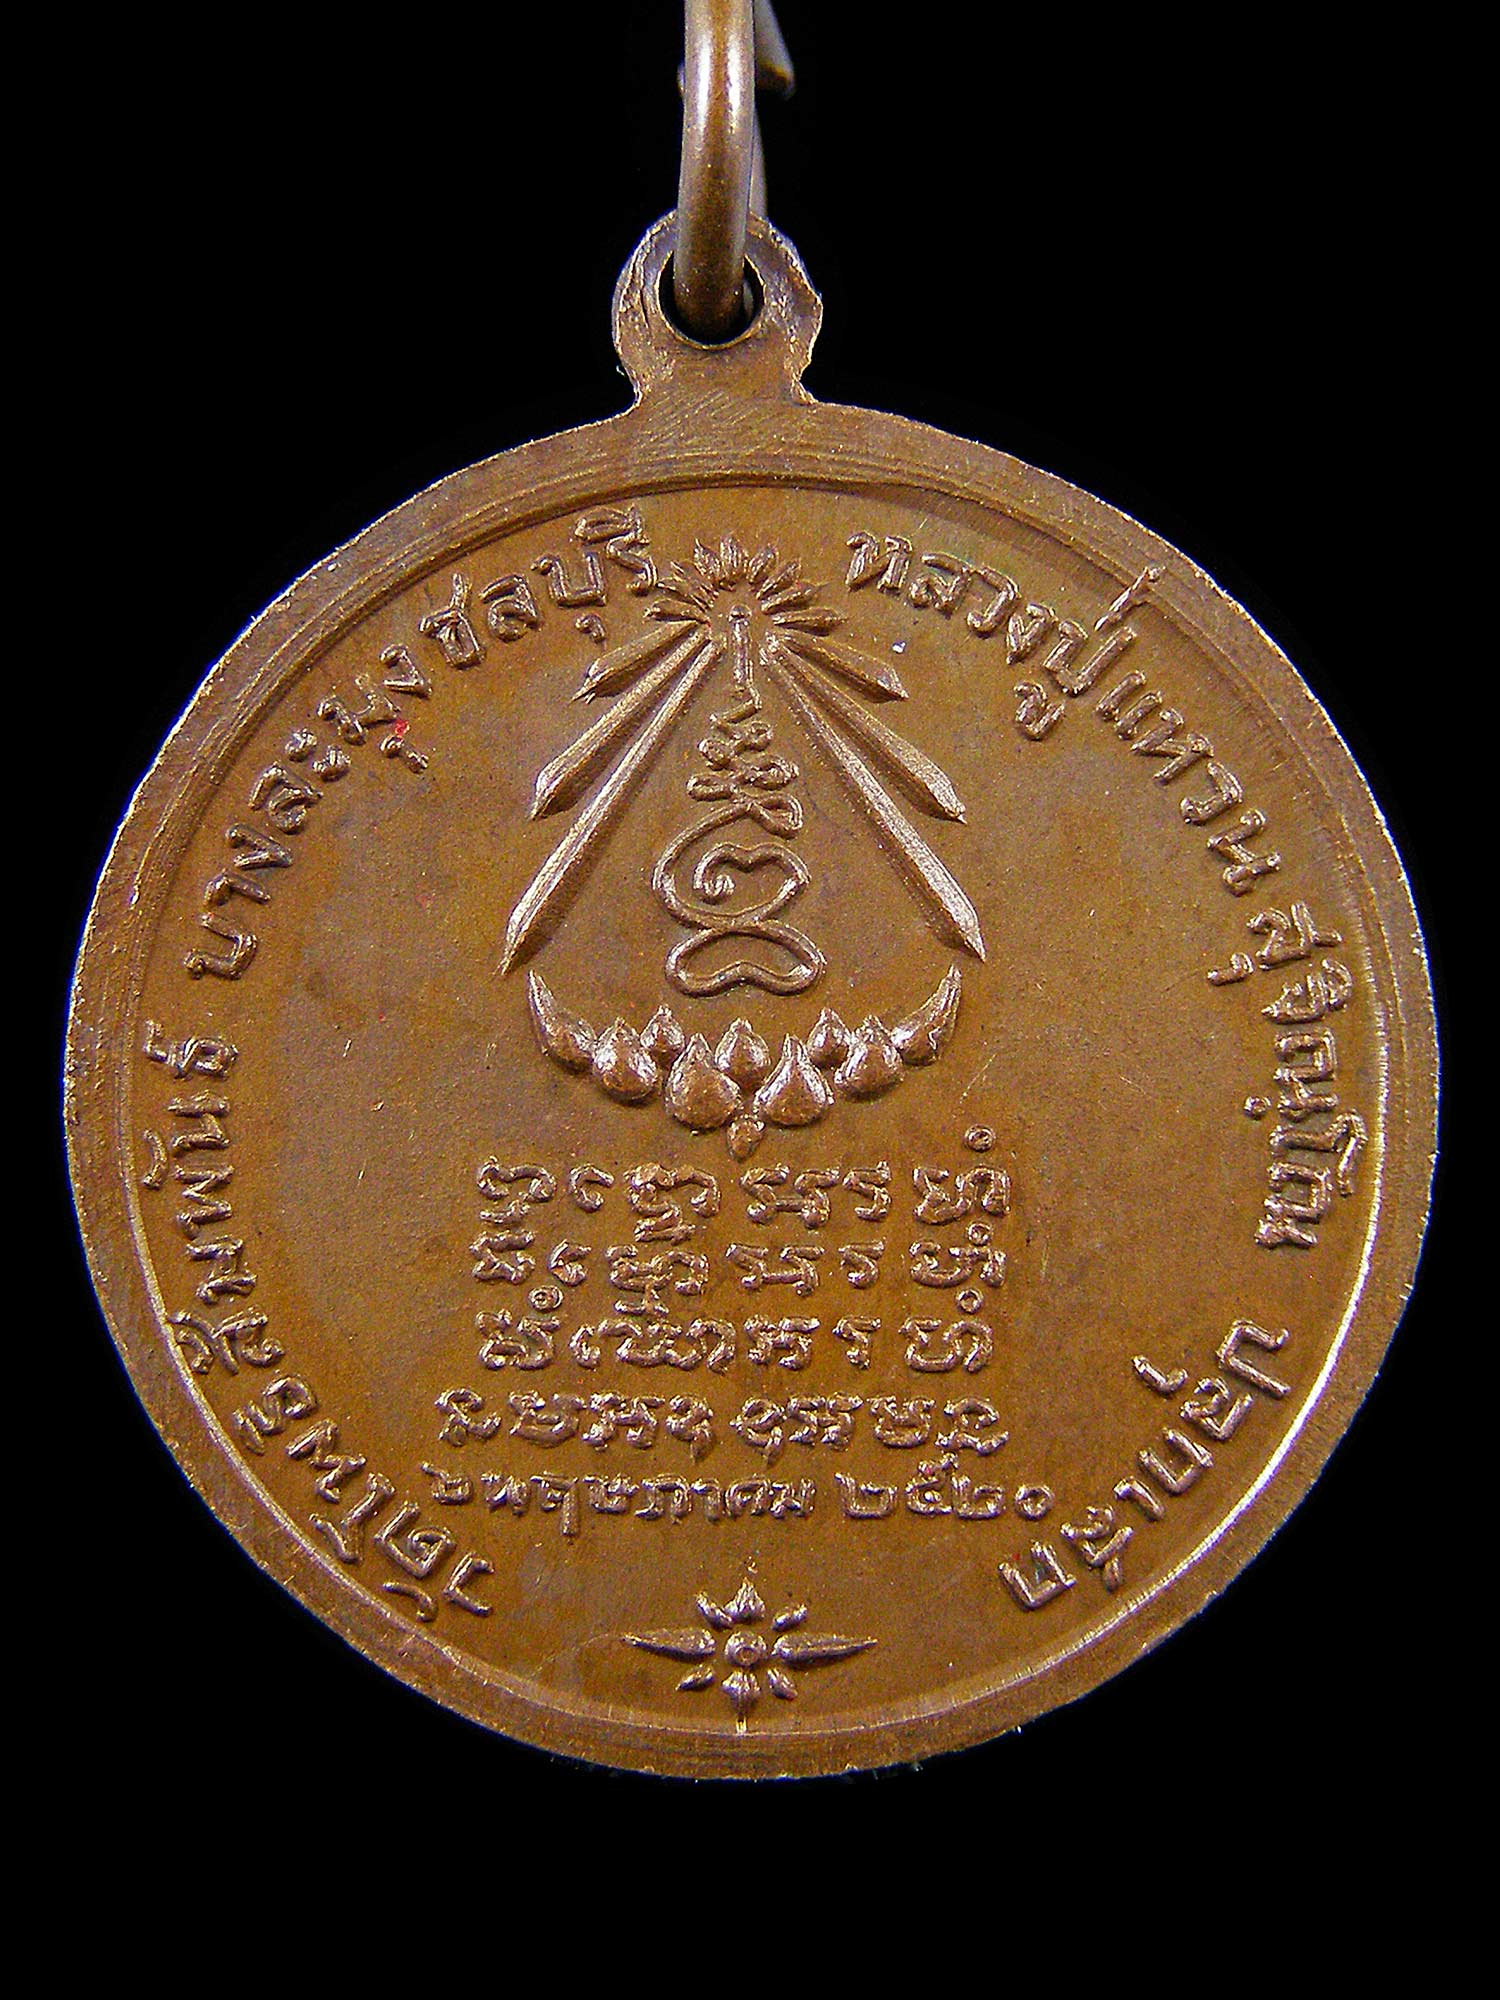 เหรียญพระแก้วมรกต หลวงปู่แหวนปลุกเสก วัดโพธิสัมพันธ์ ชลบุรี ปี2520 เนื้อทองแดง  